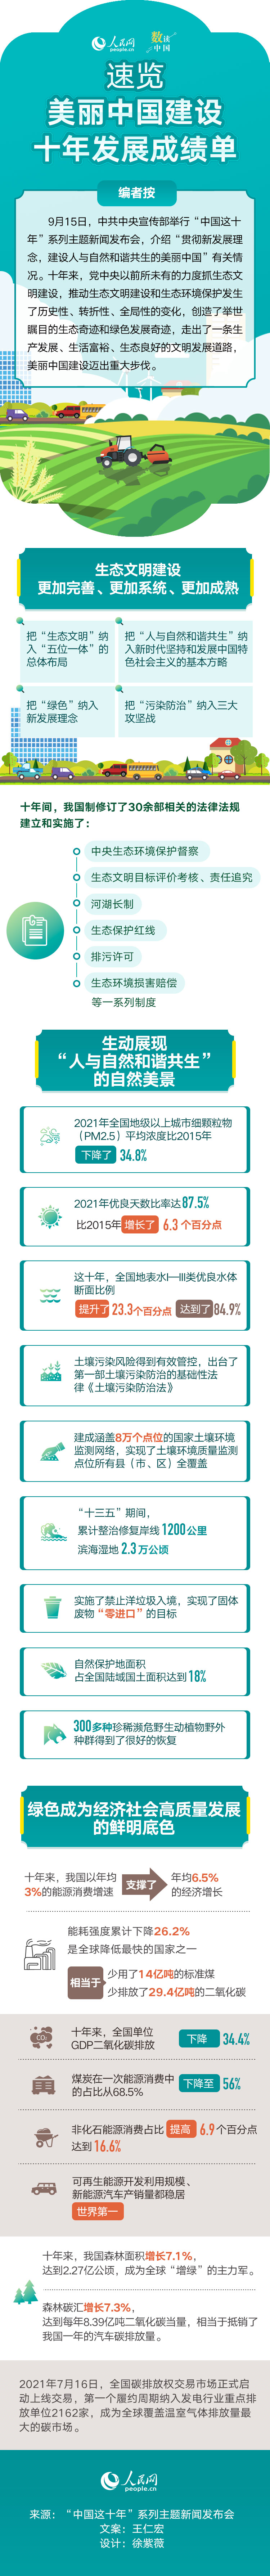 中国这十年·系列主题新闻发布会 速览美丽中国建设十年发展成绩单